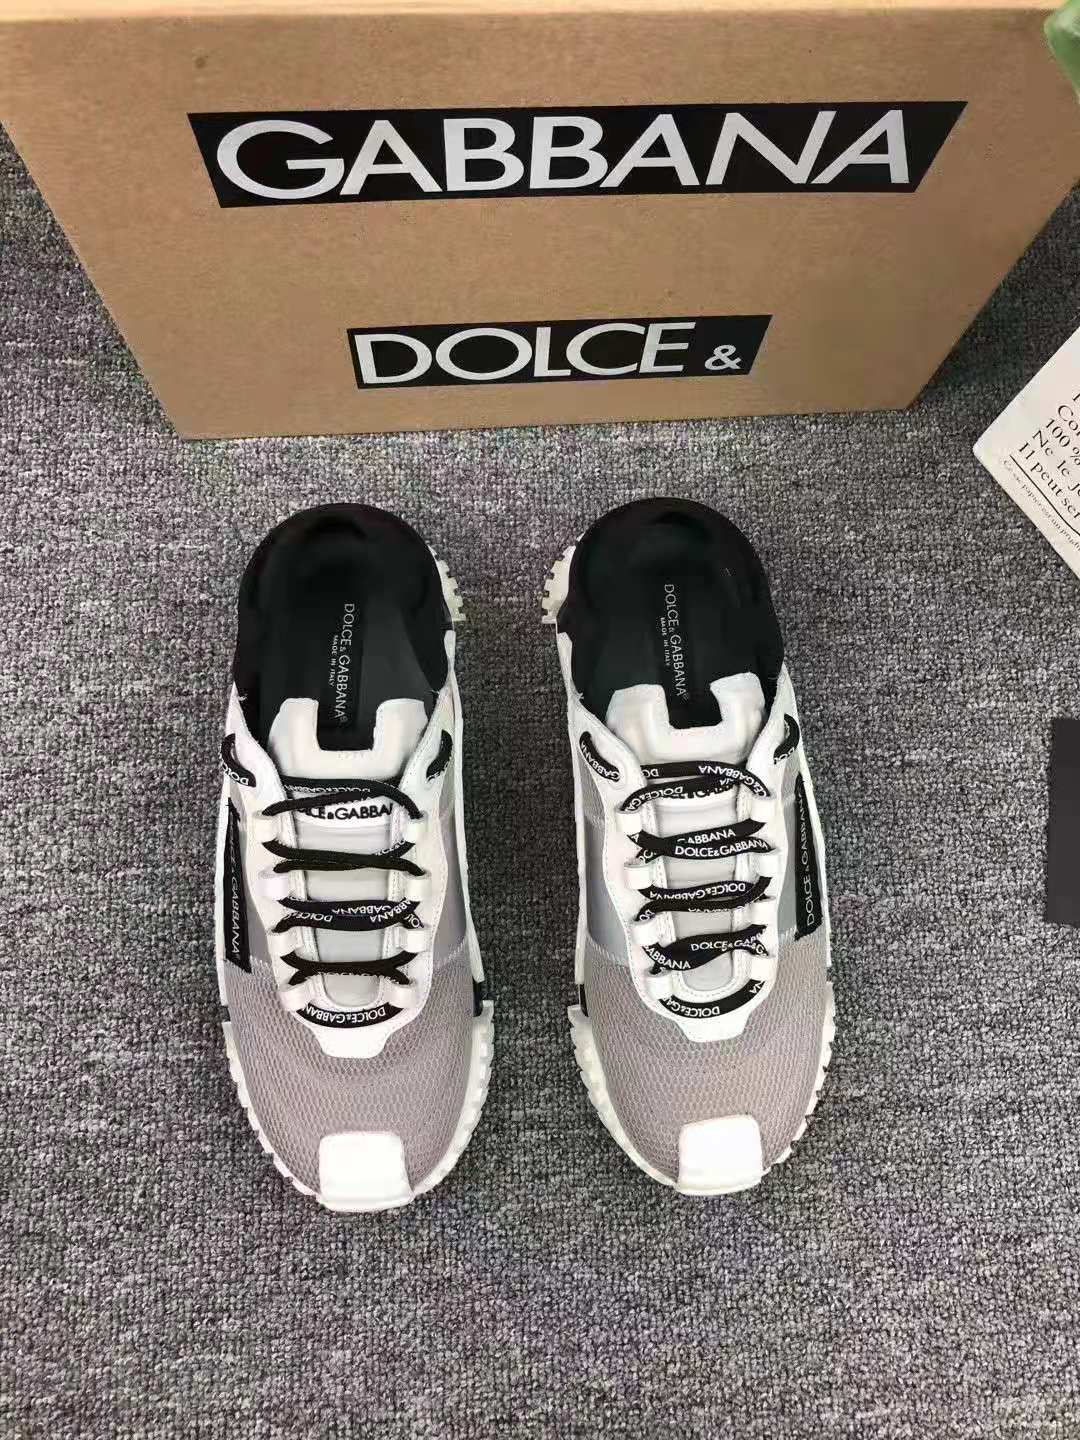 DG Dolce & Gabbana Fashion Sneaker Shoes 35-46 17